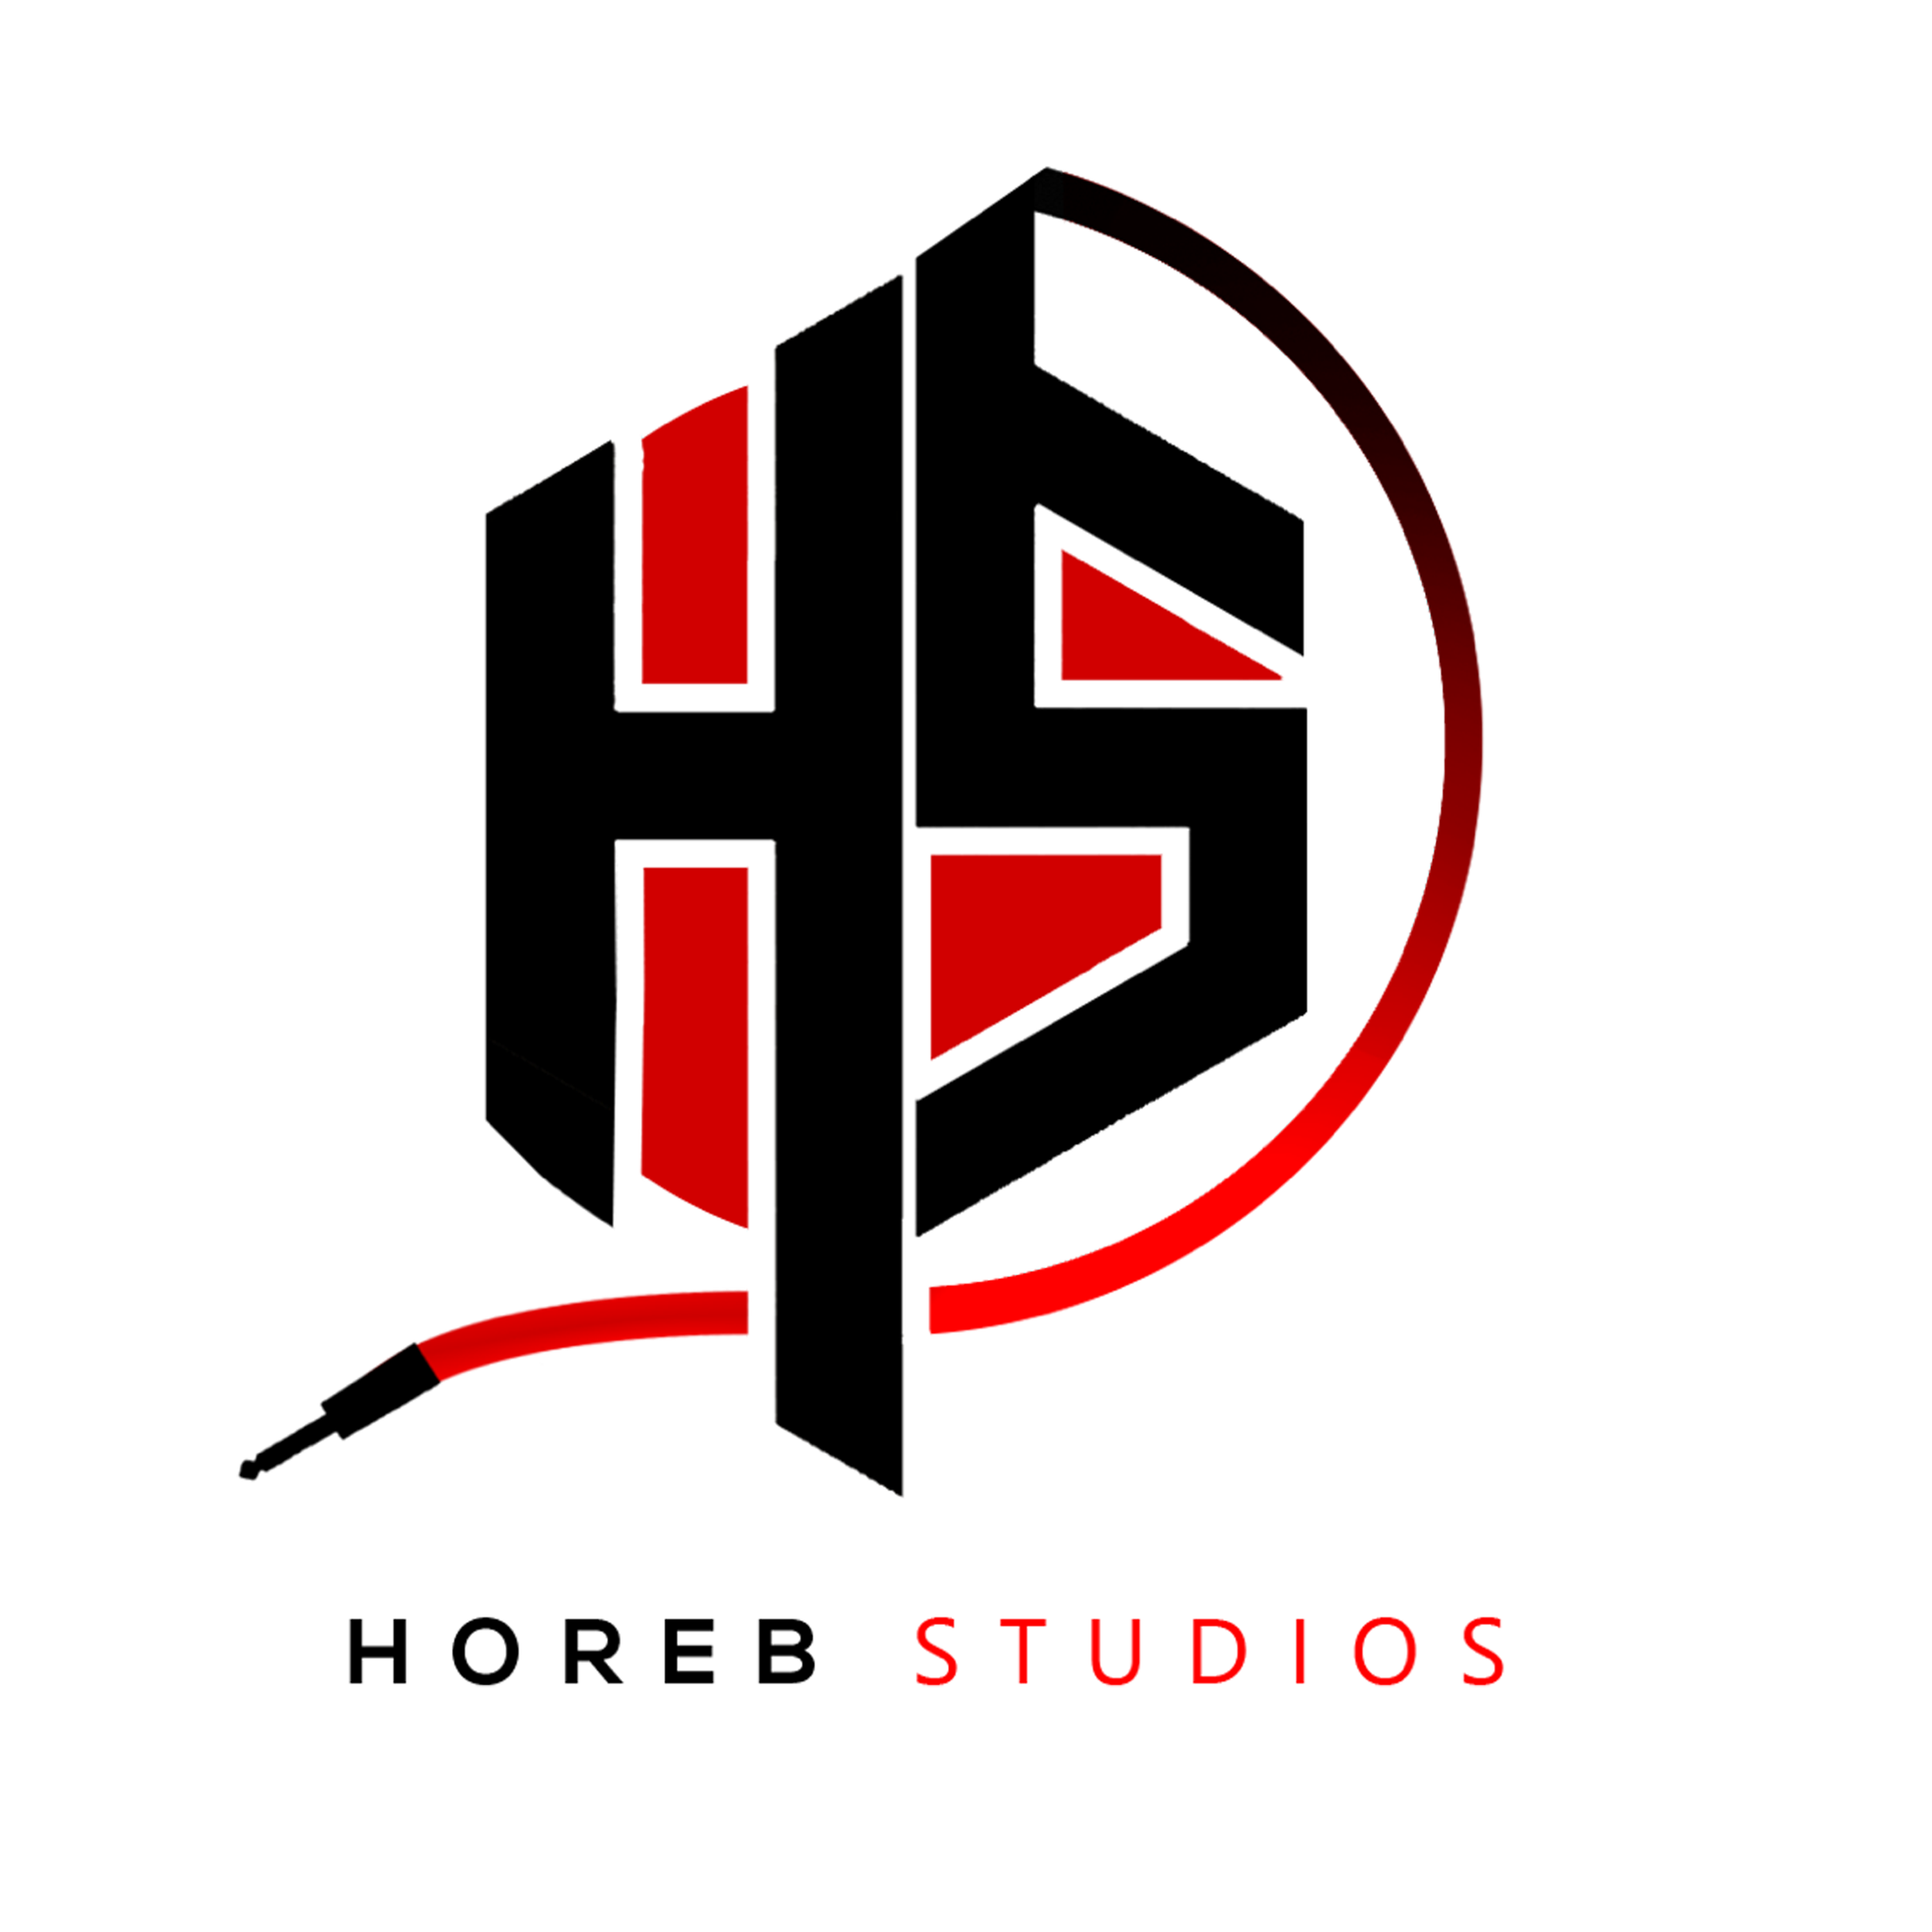 Horeb Studios